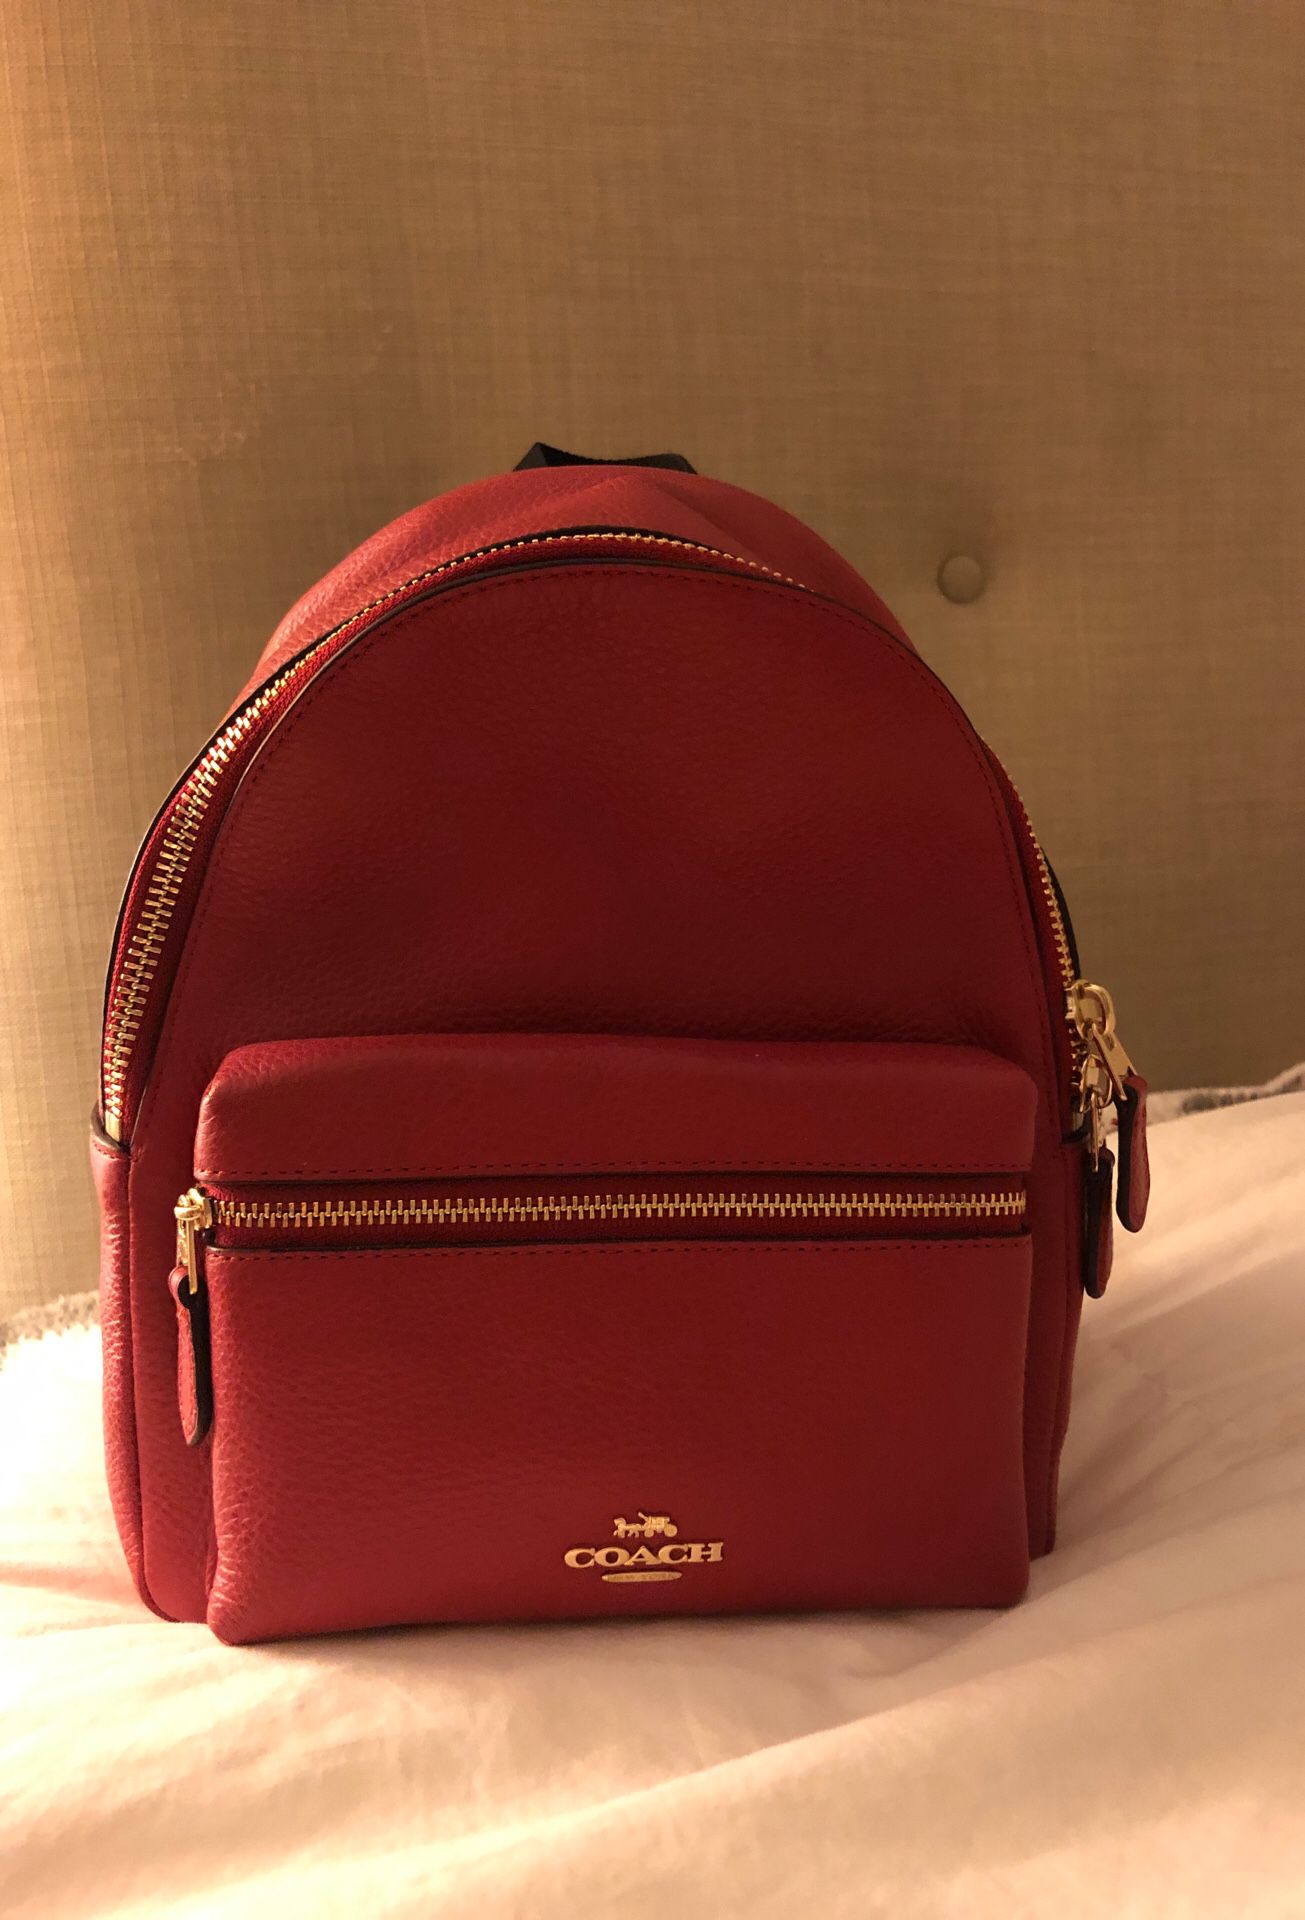 Coach Red mini backpack